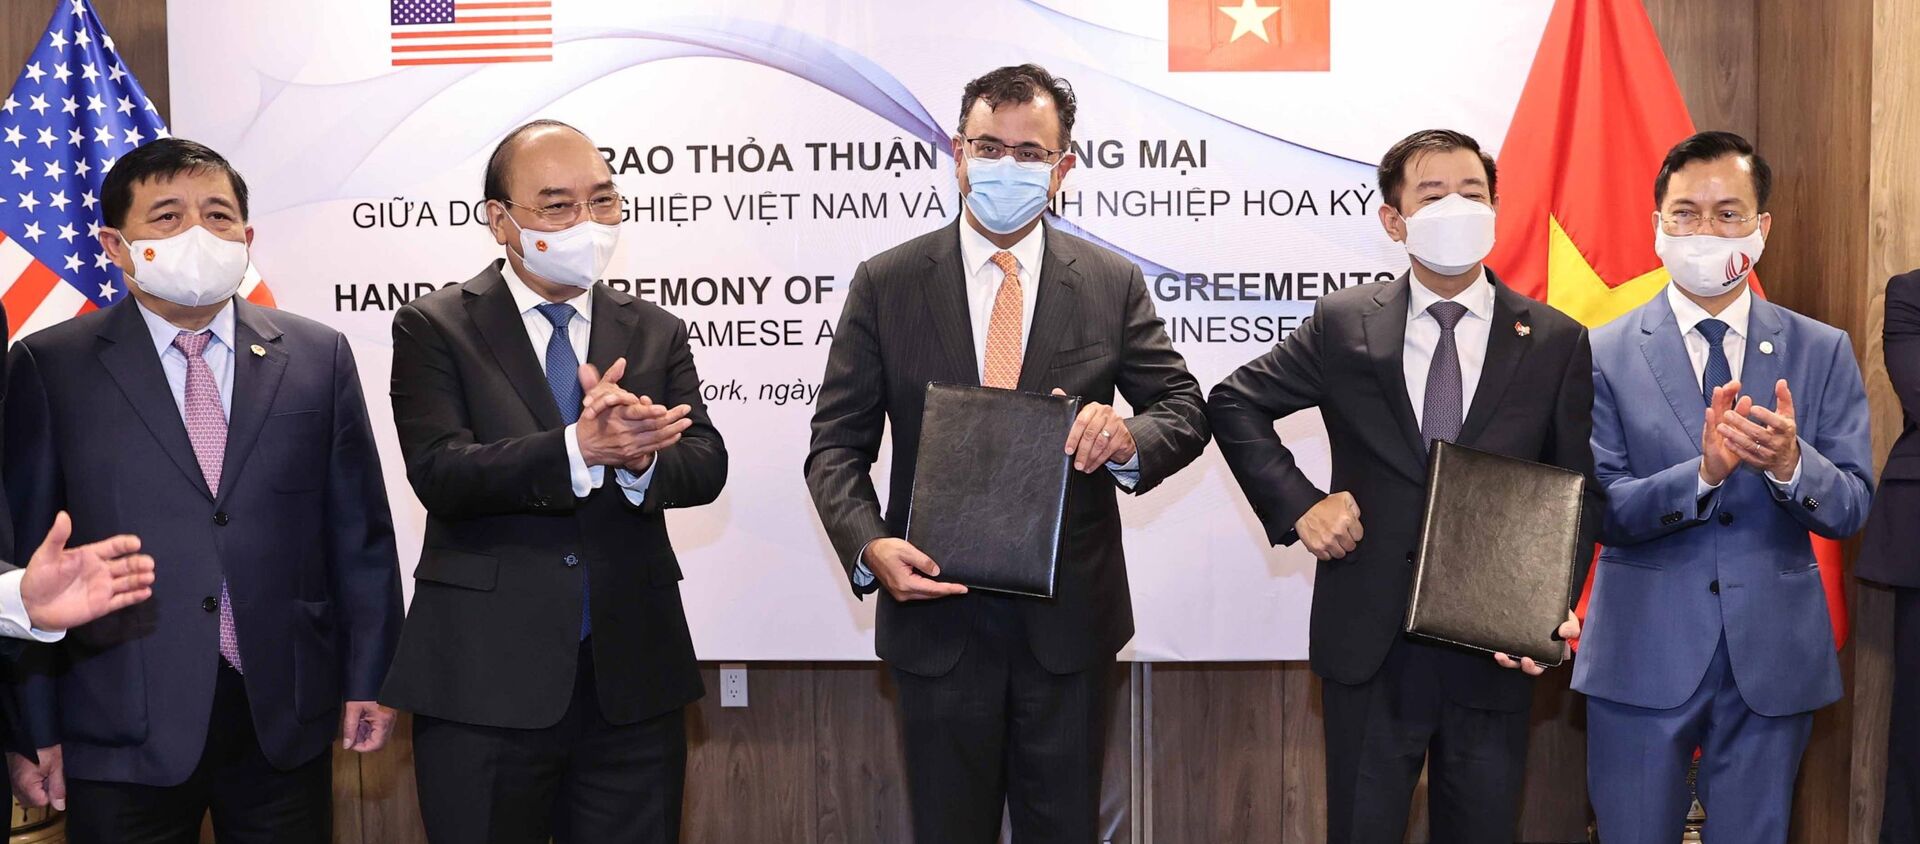 Chủ tịch nước Nguyễn Xuân Phúc chứng kiến Lễ trao Thoả thuận hợp tác giữa các doanh nghiệp Việt Nam và doanh nghiệp Hoa Kỳ - Sputnik Việt Nam, 1920, 23.09.2021